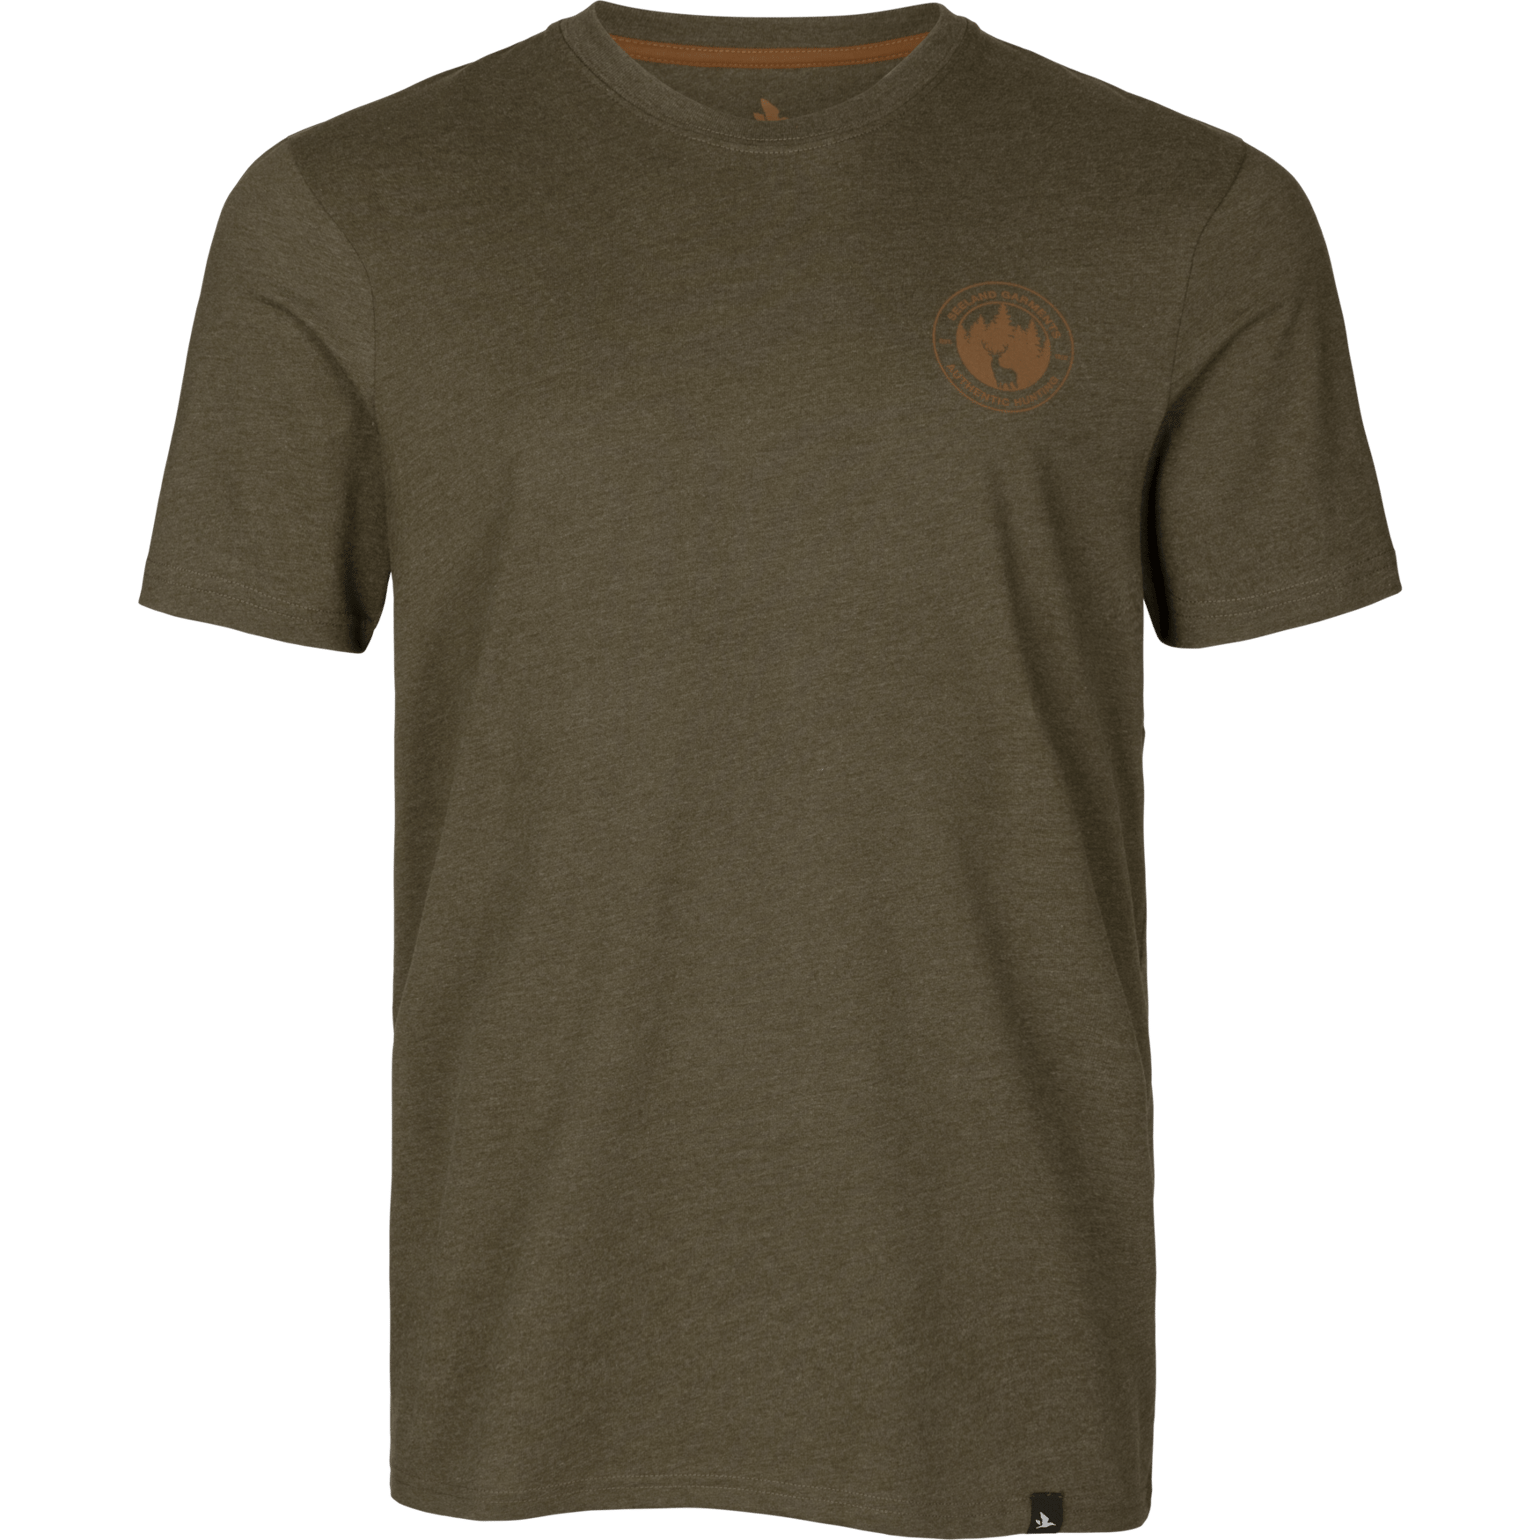 Seeland Saker T-Shirt Pine Green Melange